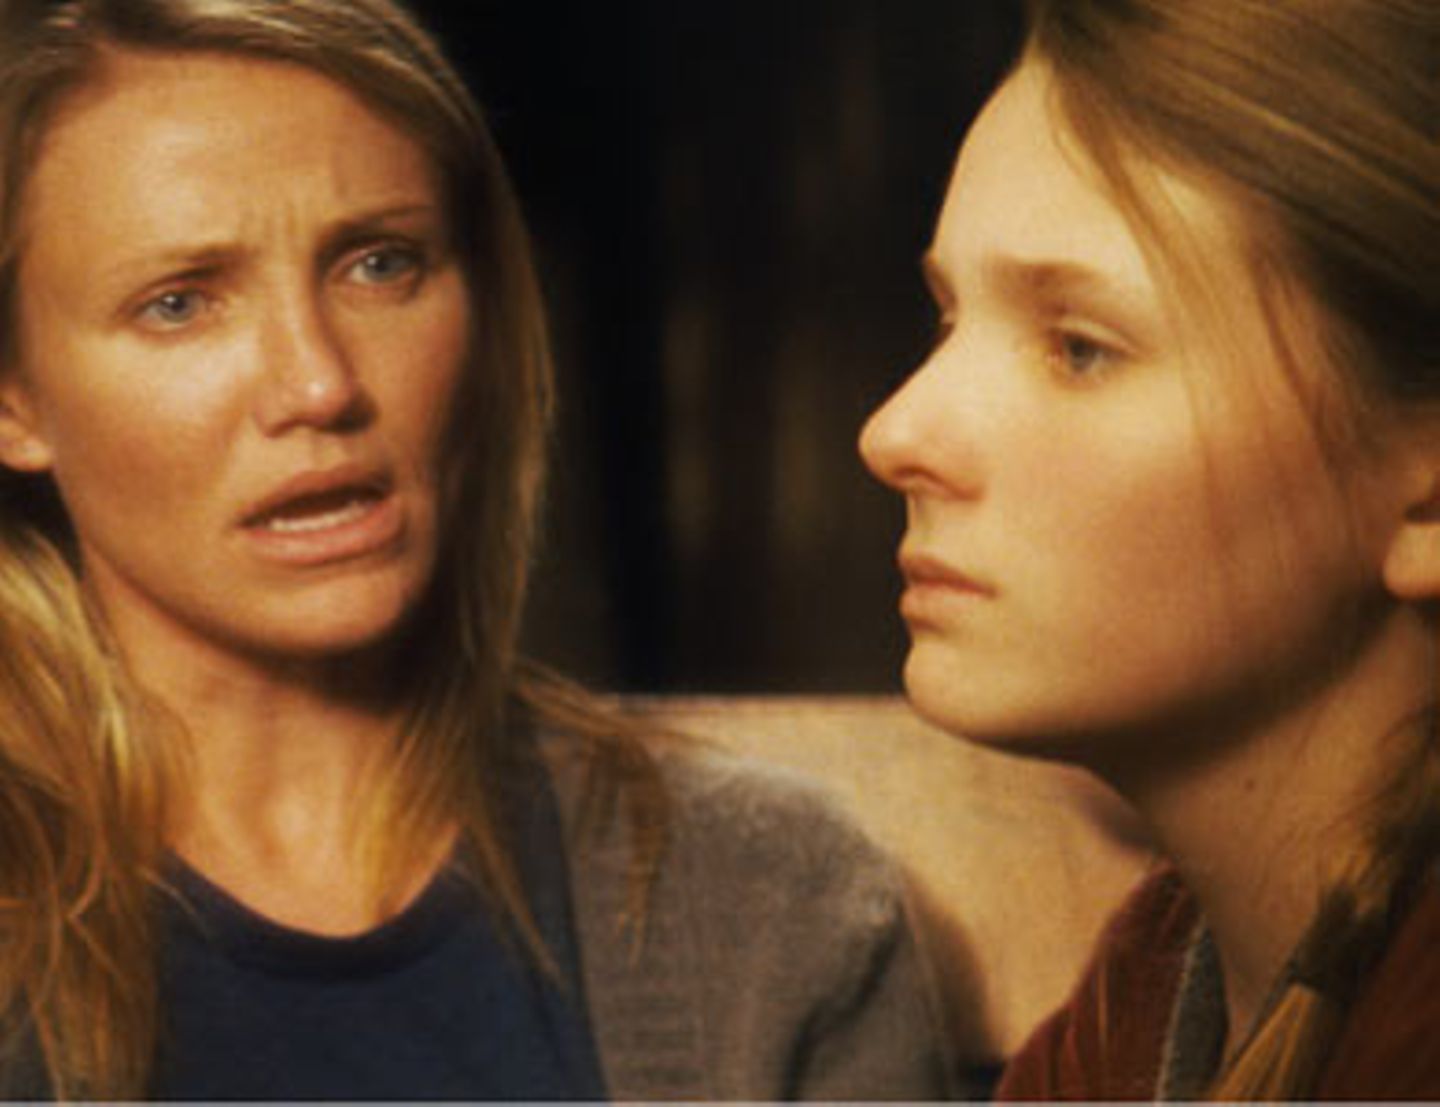 Im Kino: "Beim Leben meiner Schwester" Annas (Abigail Breslin) Entscheidung vor Gericht für ihre Rechte zu kämpfen, kann Mutter Sara (Cameron Diaz) nicht verstehen und es kommt zu schweren Auseinandersetzungen in der Familie.